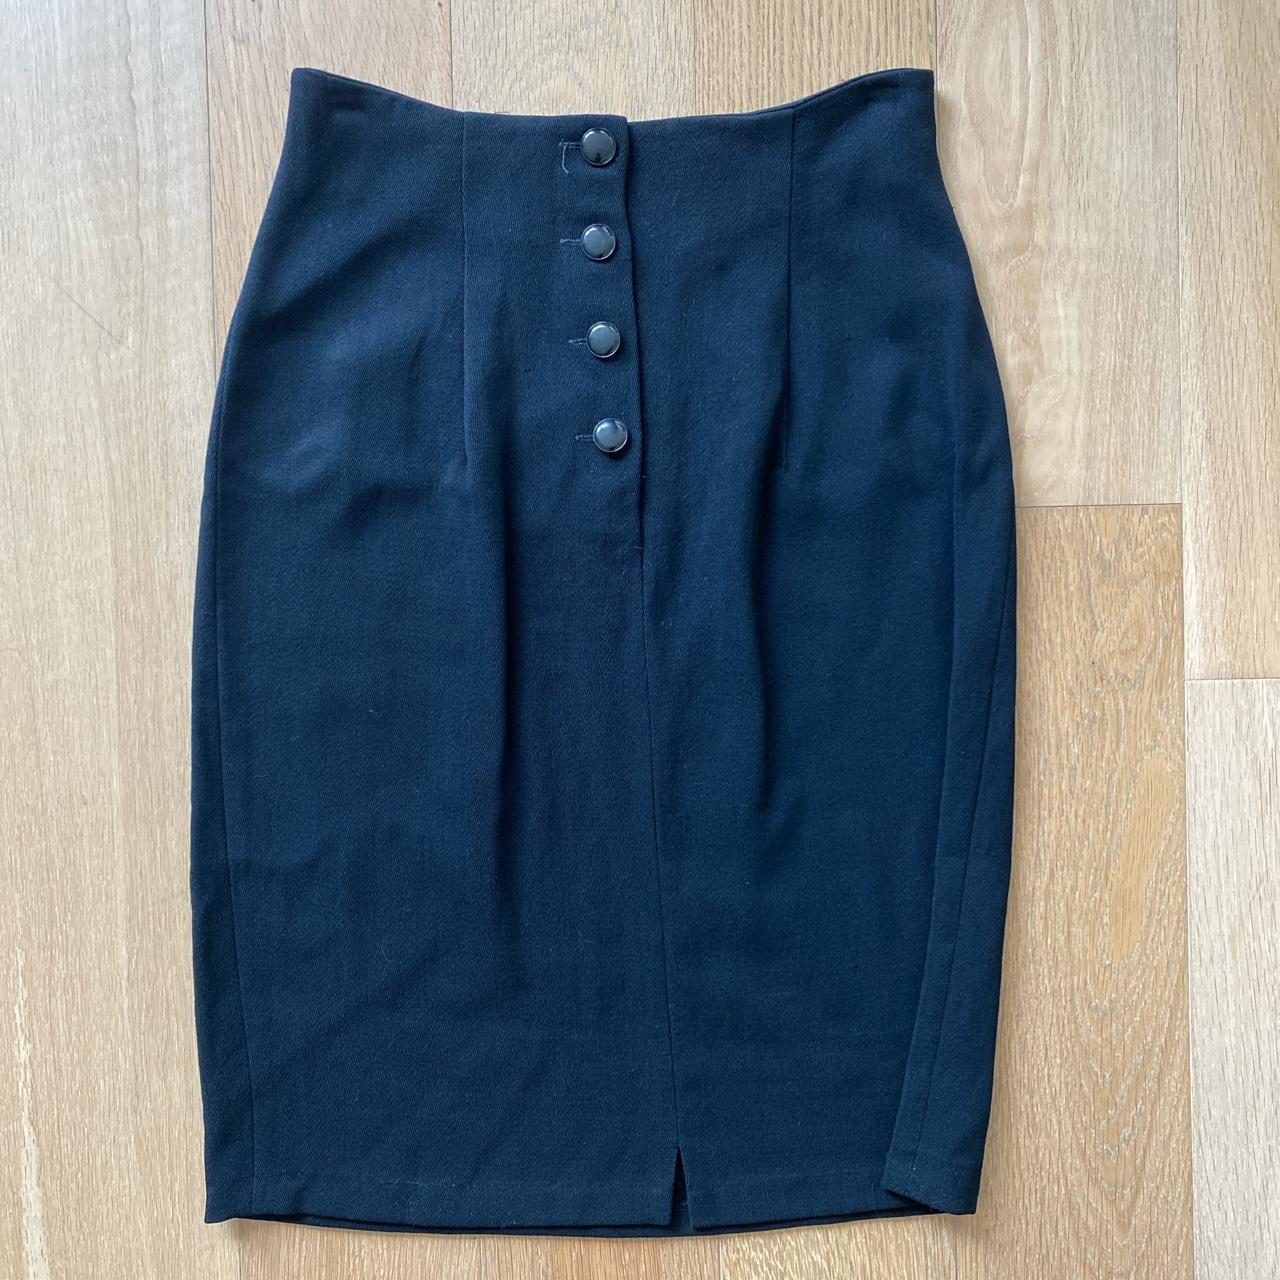 Emanuel Ungaro Women's Black Skirt